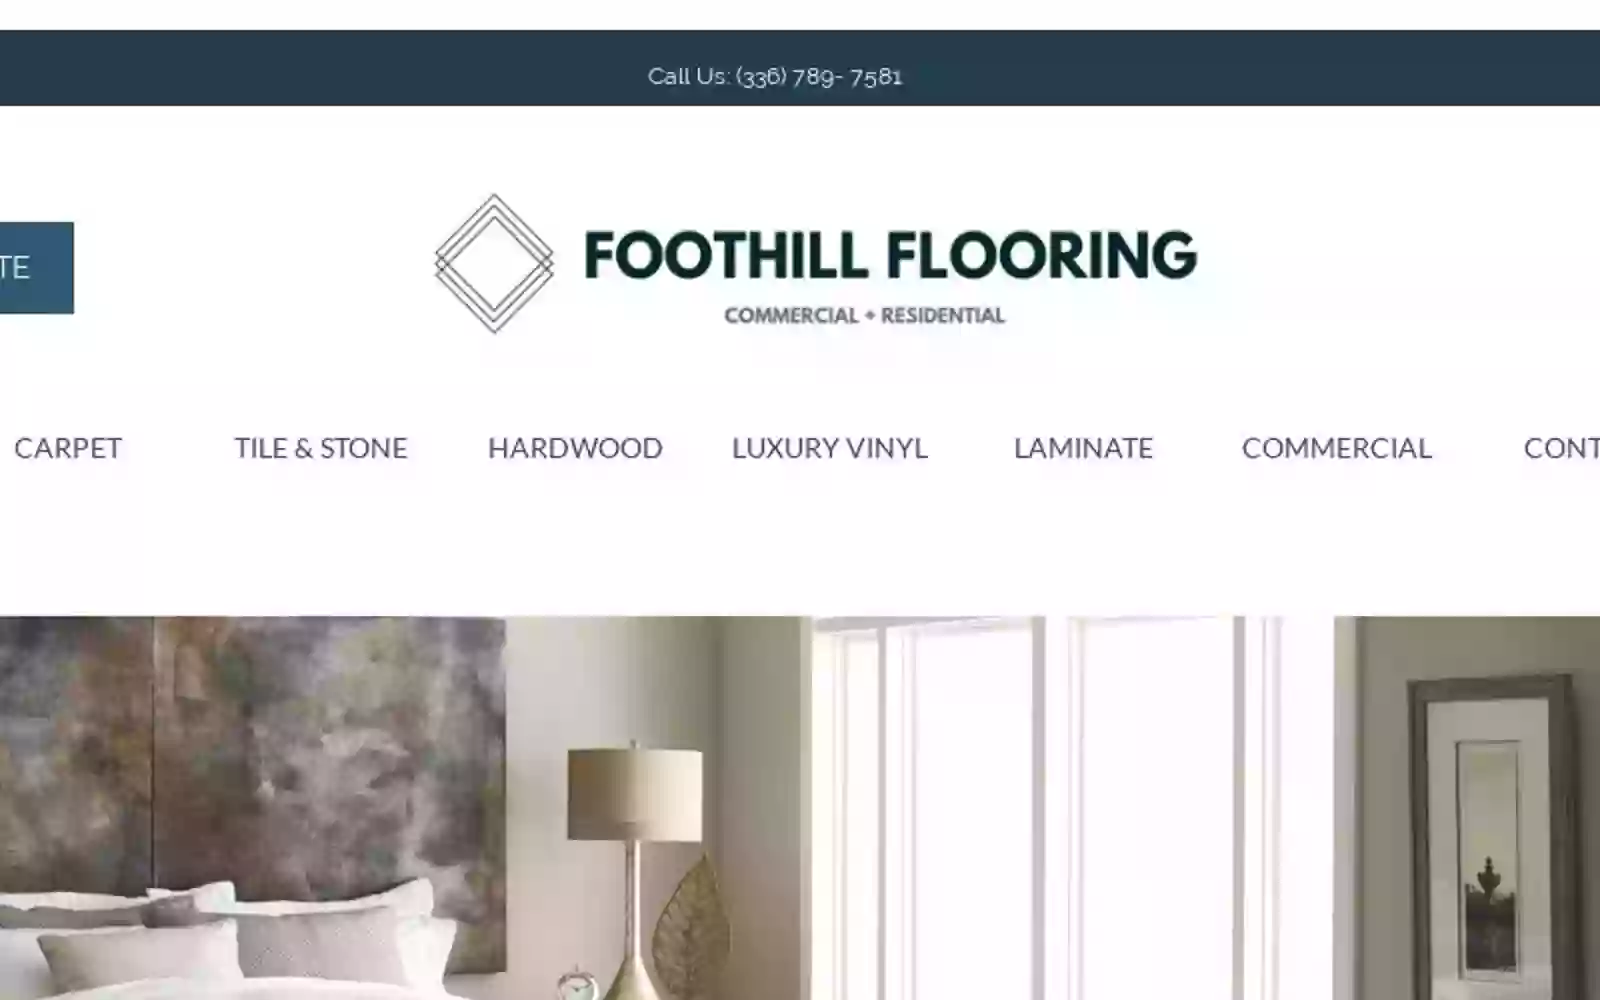 Foothill Flooring Inc